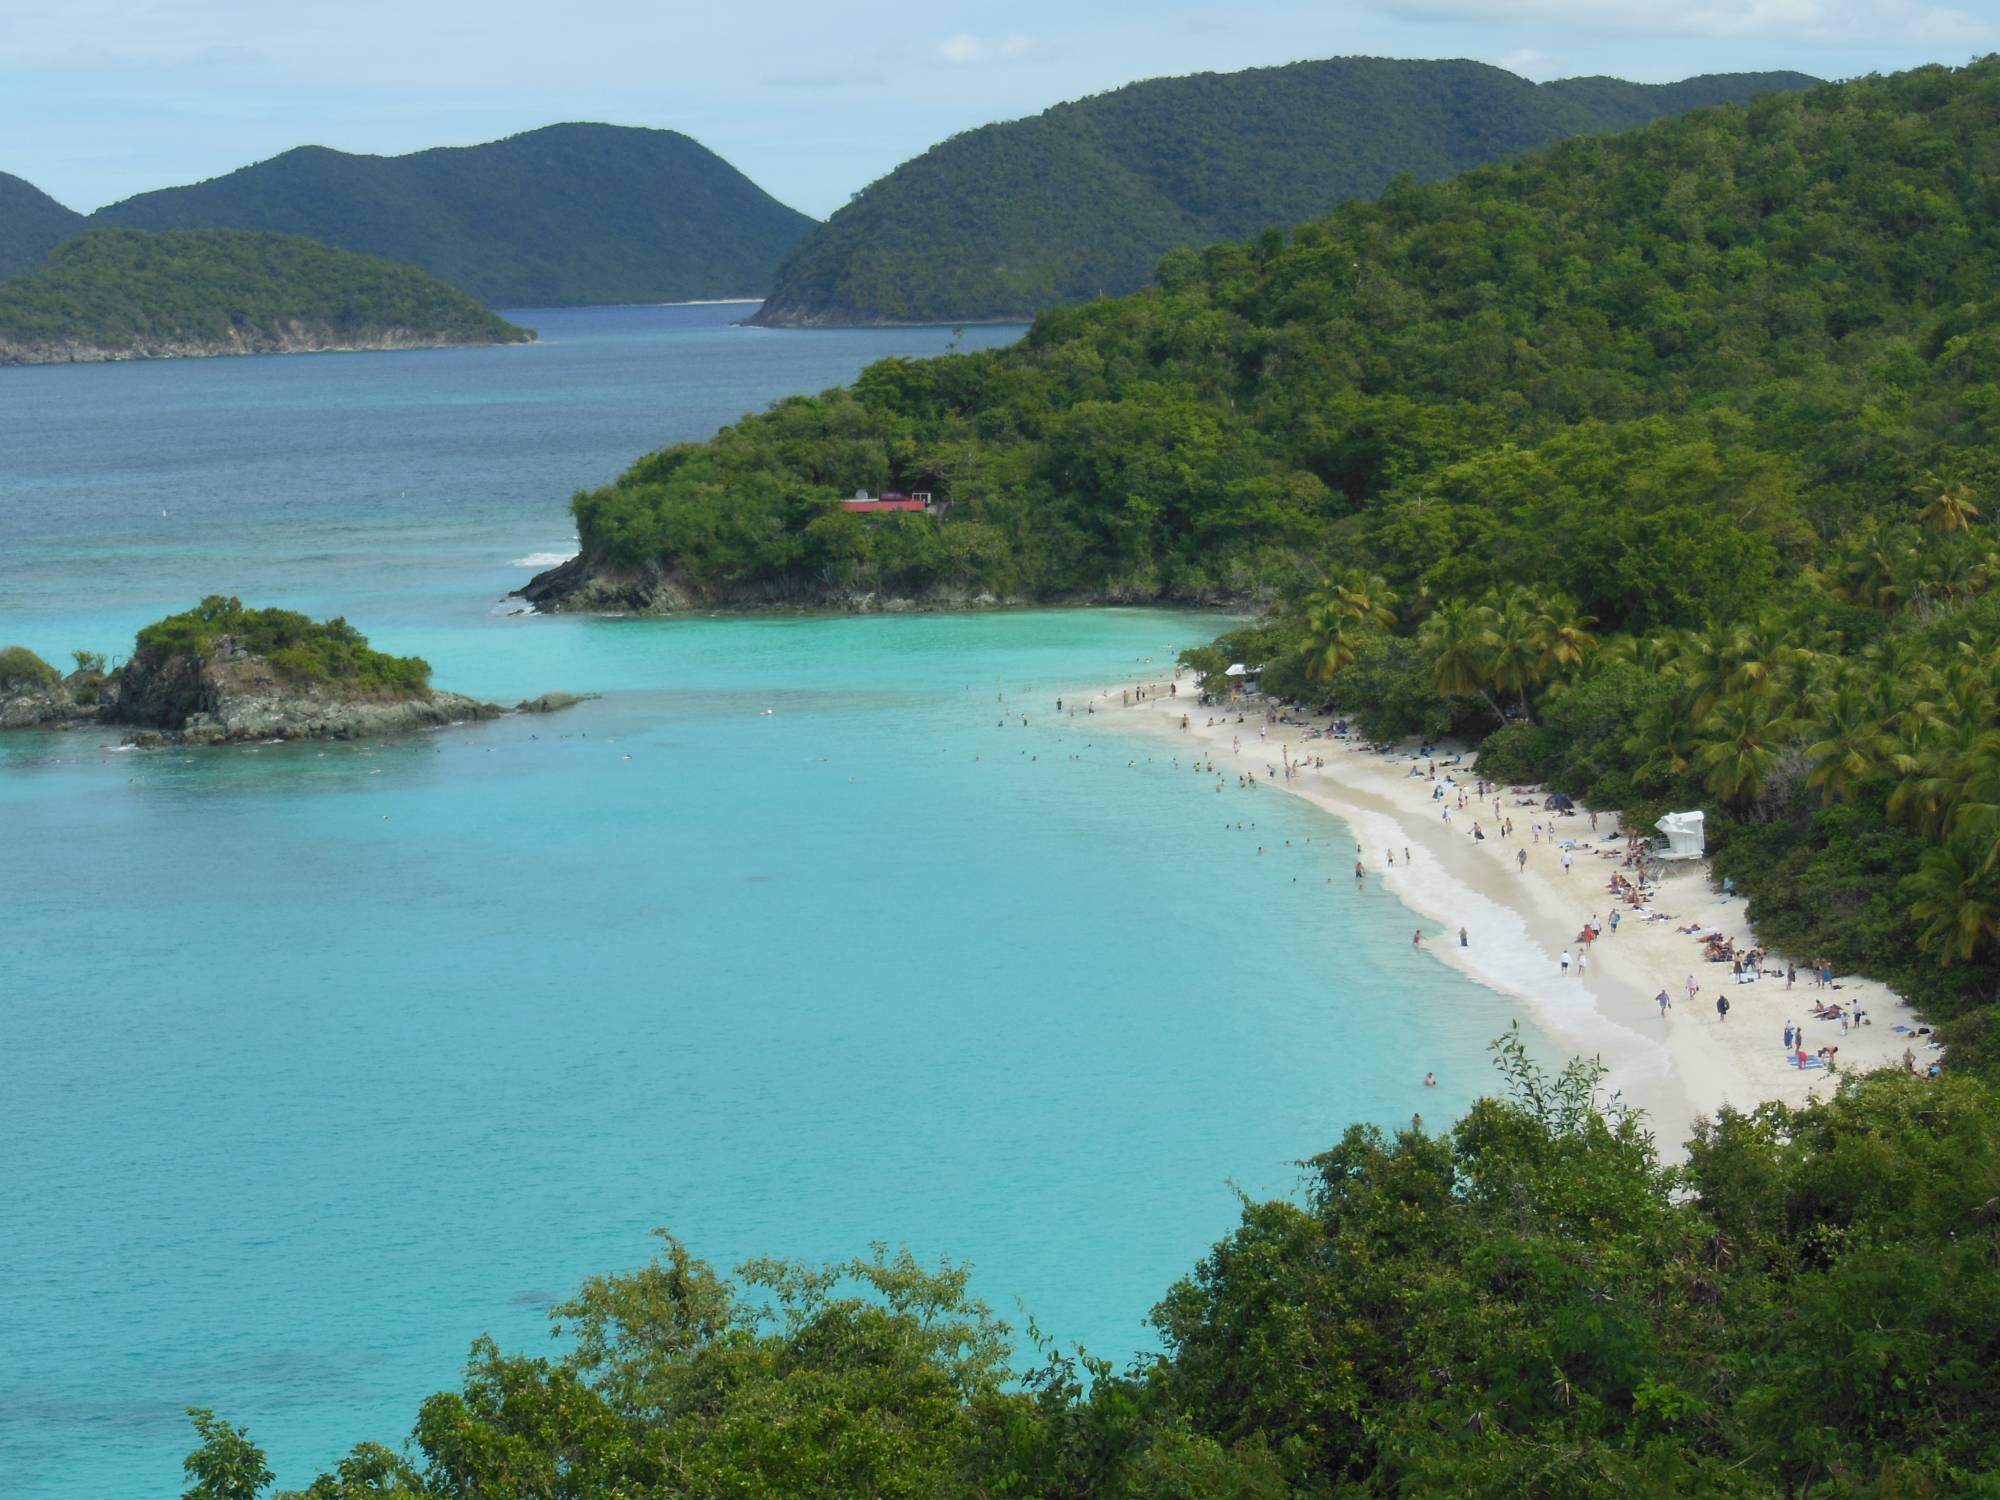 Explore the beauty of St. John in the U.S. Virgin Islands |PassPorter.com